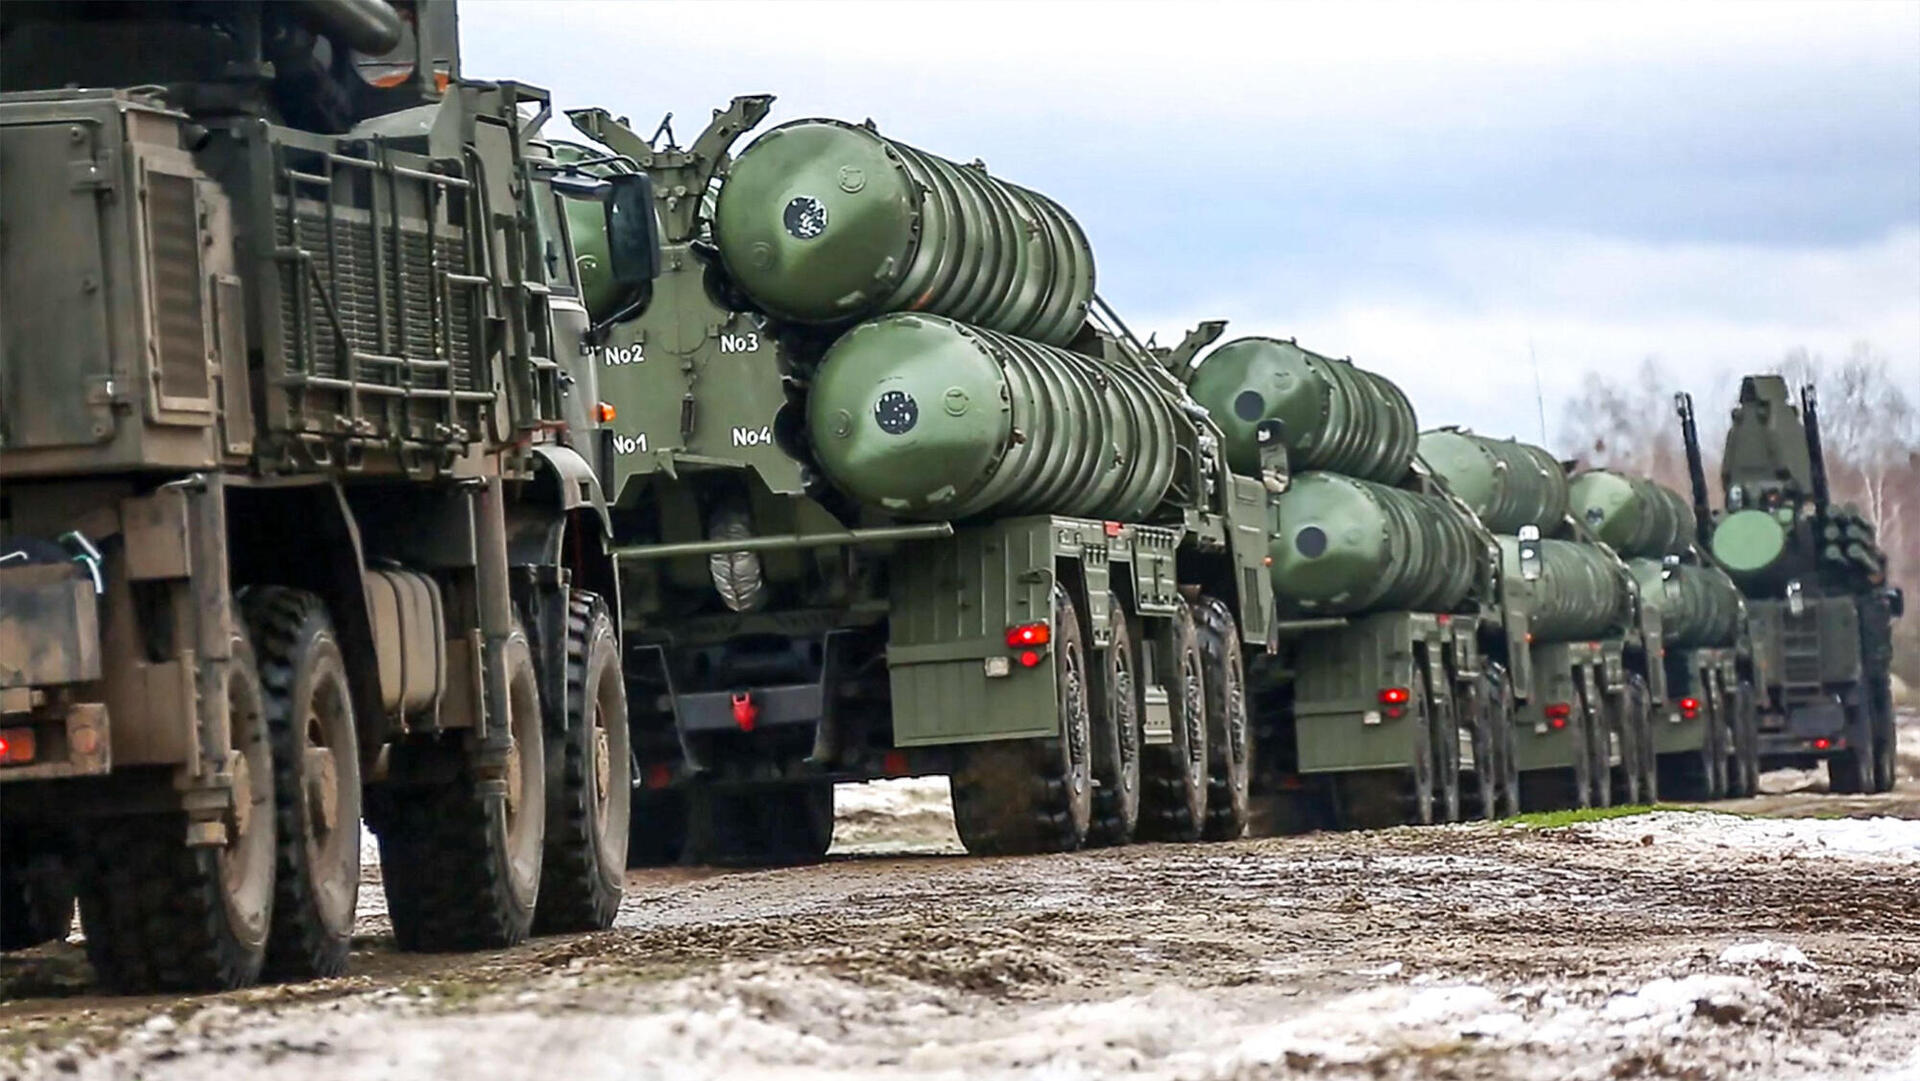 צבא רוסיה מתכונן בעקבות התקדמות צבאות רוסיה ו אוקראינה שמתכוננות ל מלחמה בעקבות התקדמות צבאות רוסיה ו אוקראינה שמתכוננות ל מלחמה